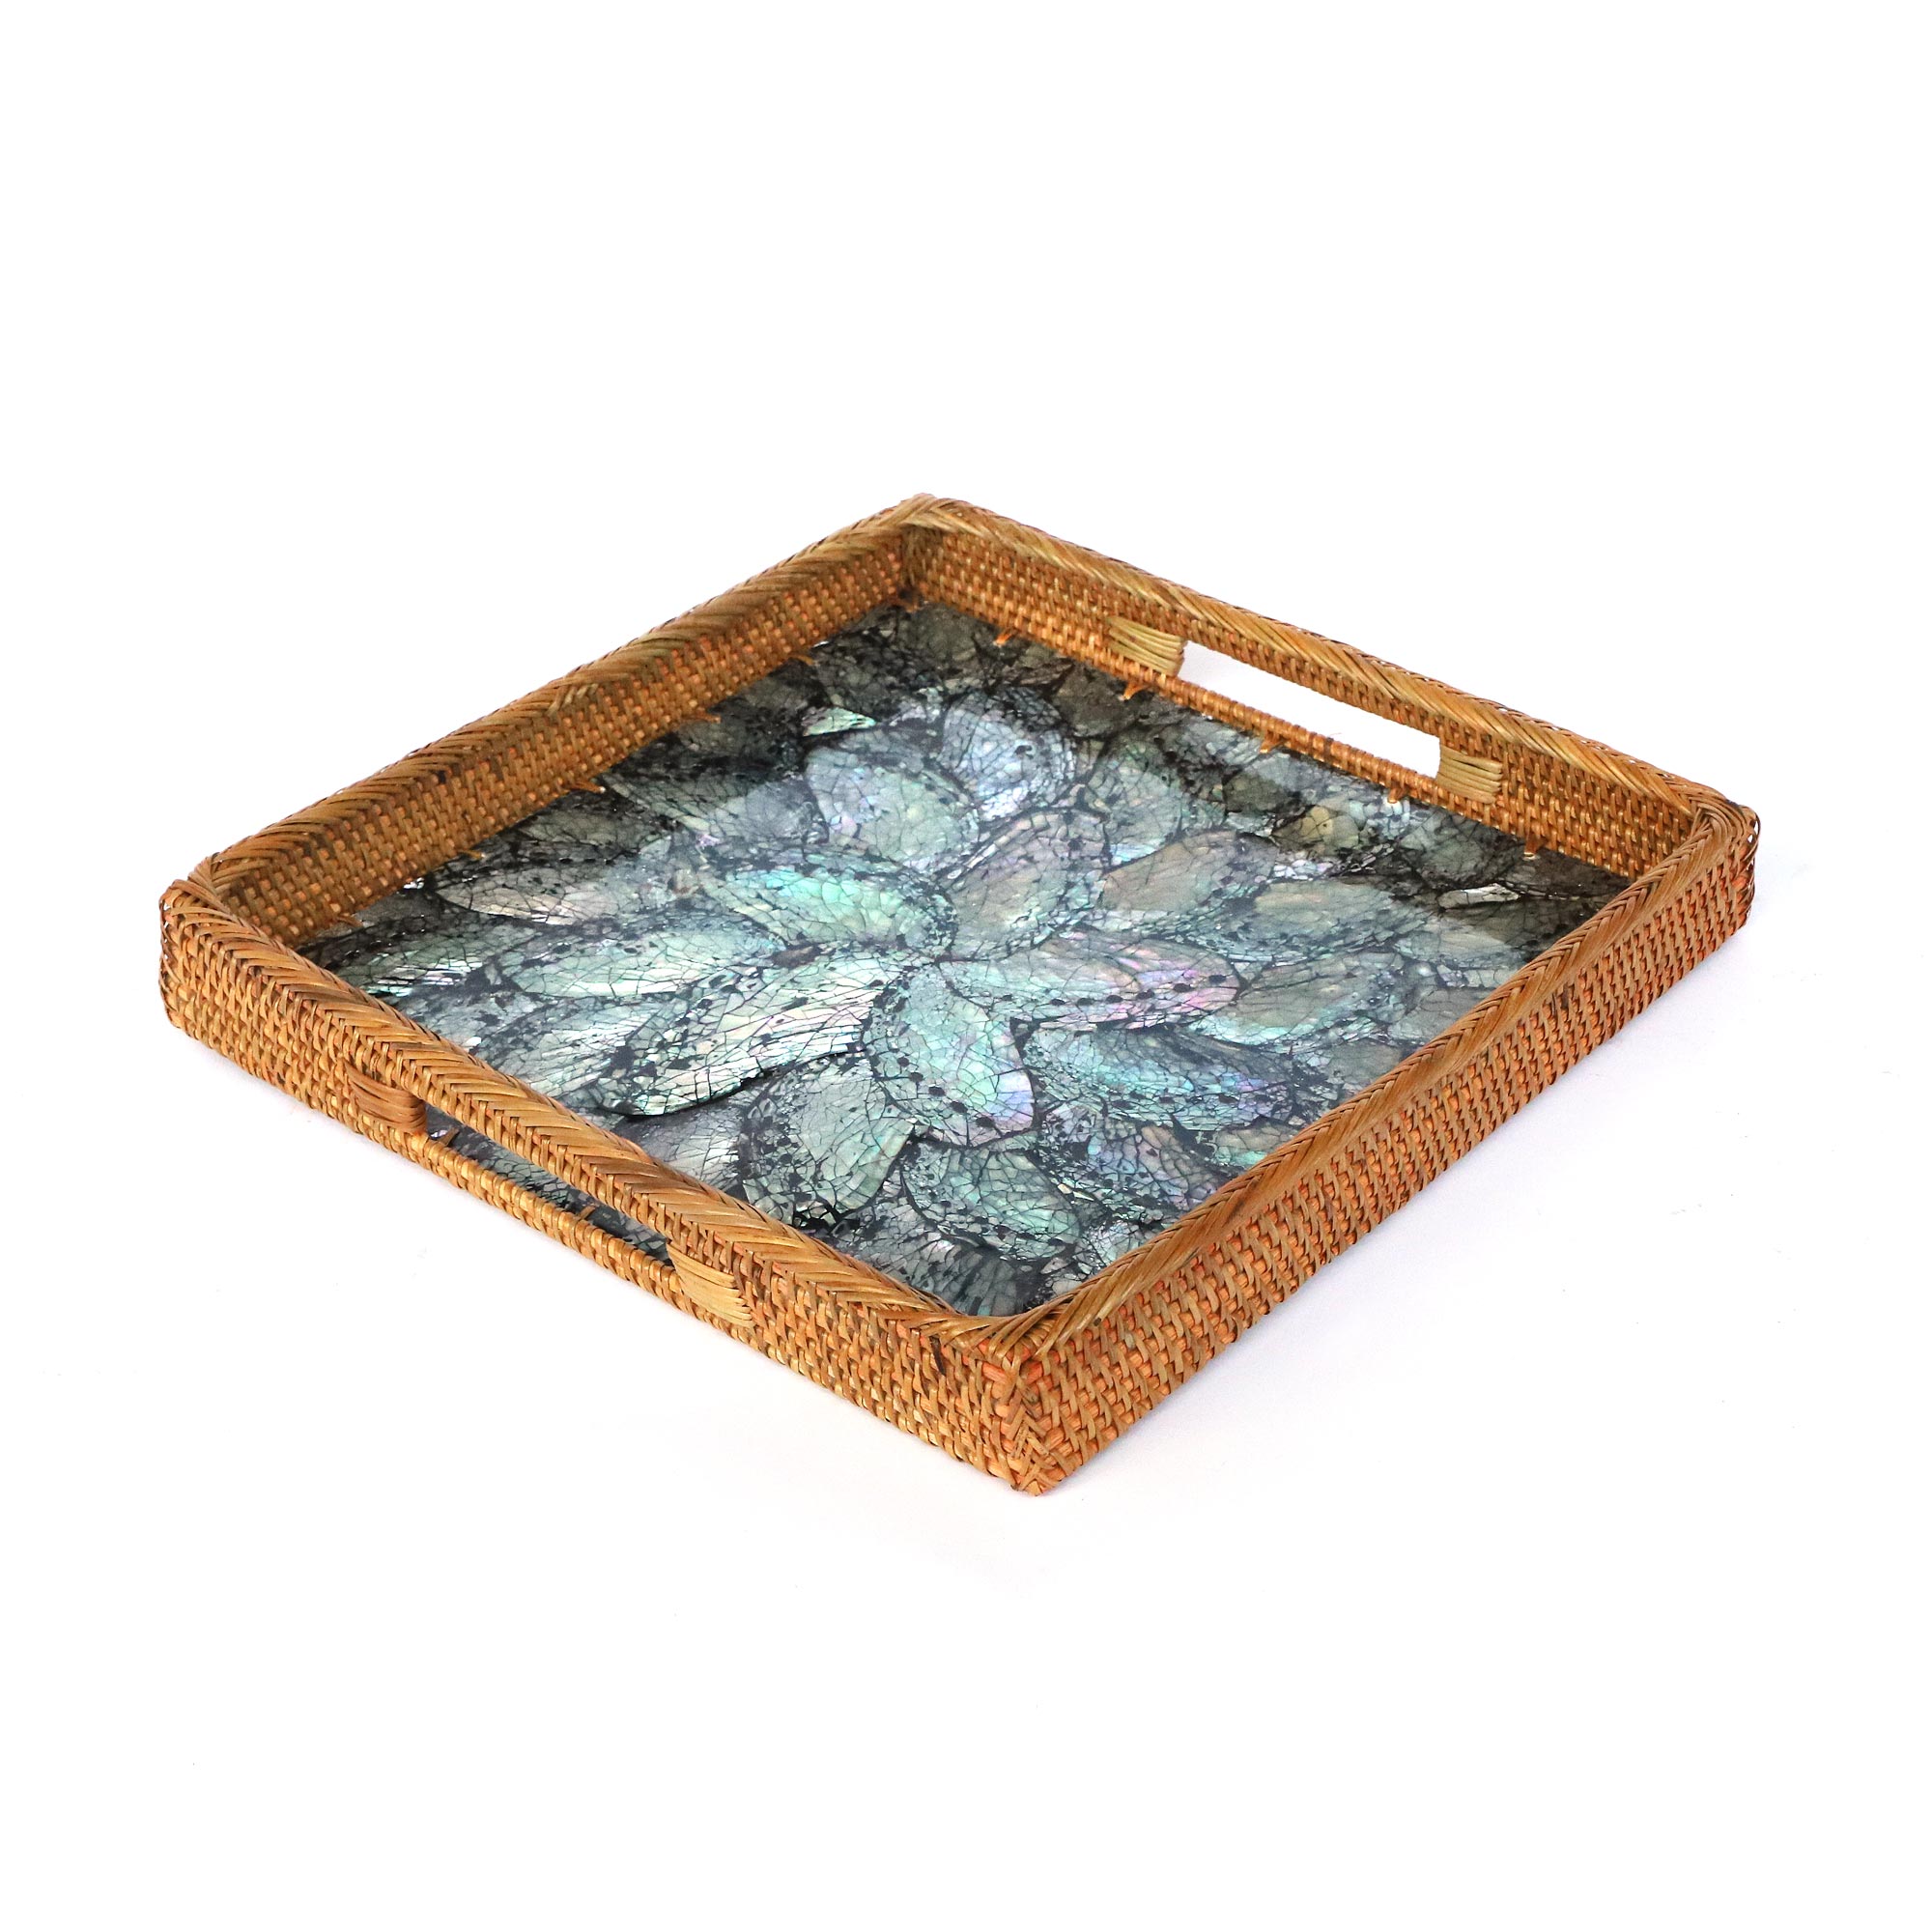 Rattan-Tablett mit Perlmutt-Boden, 30 cm cm, zu H4 39,00 30 cm, B L €